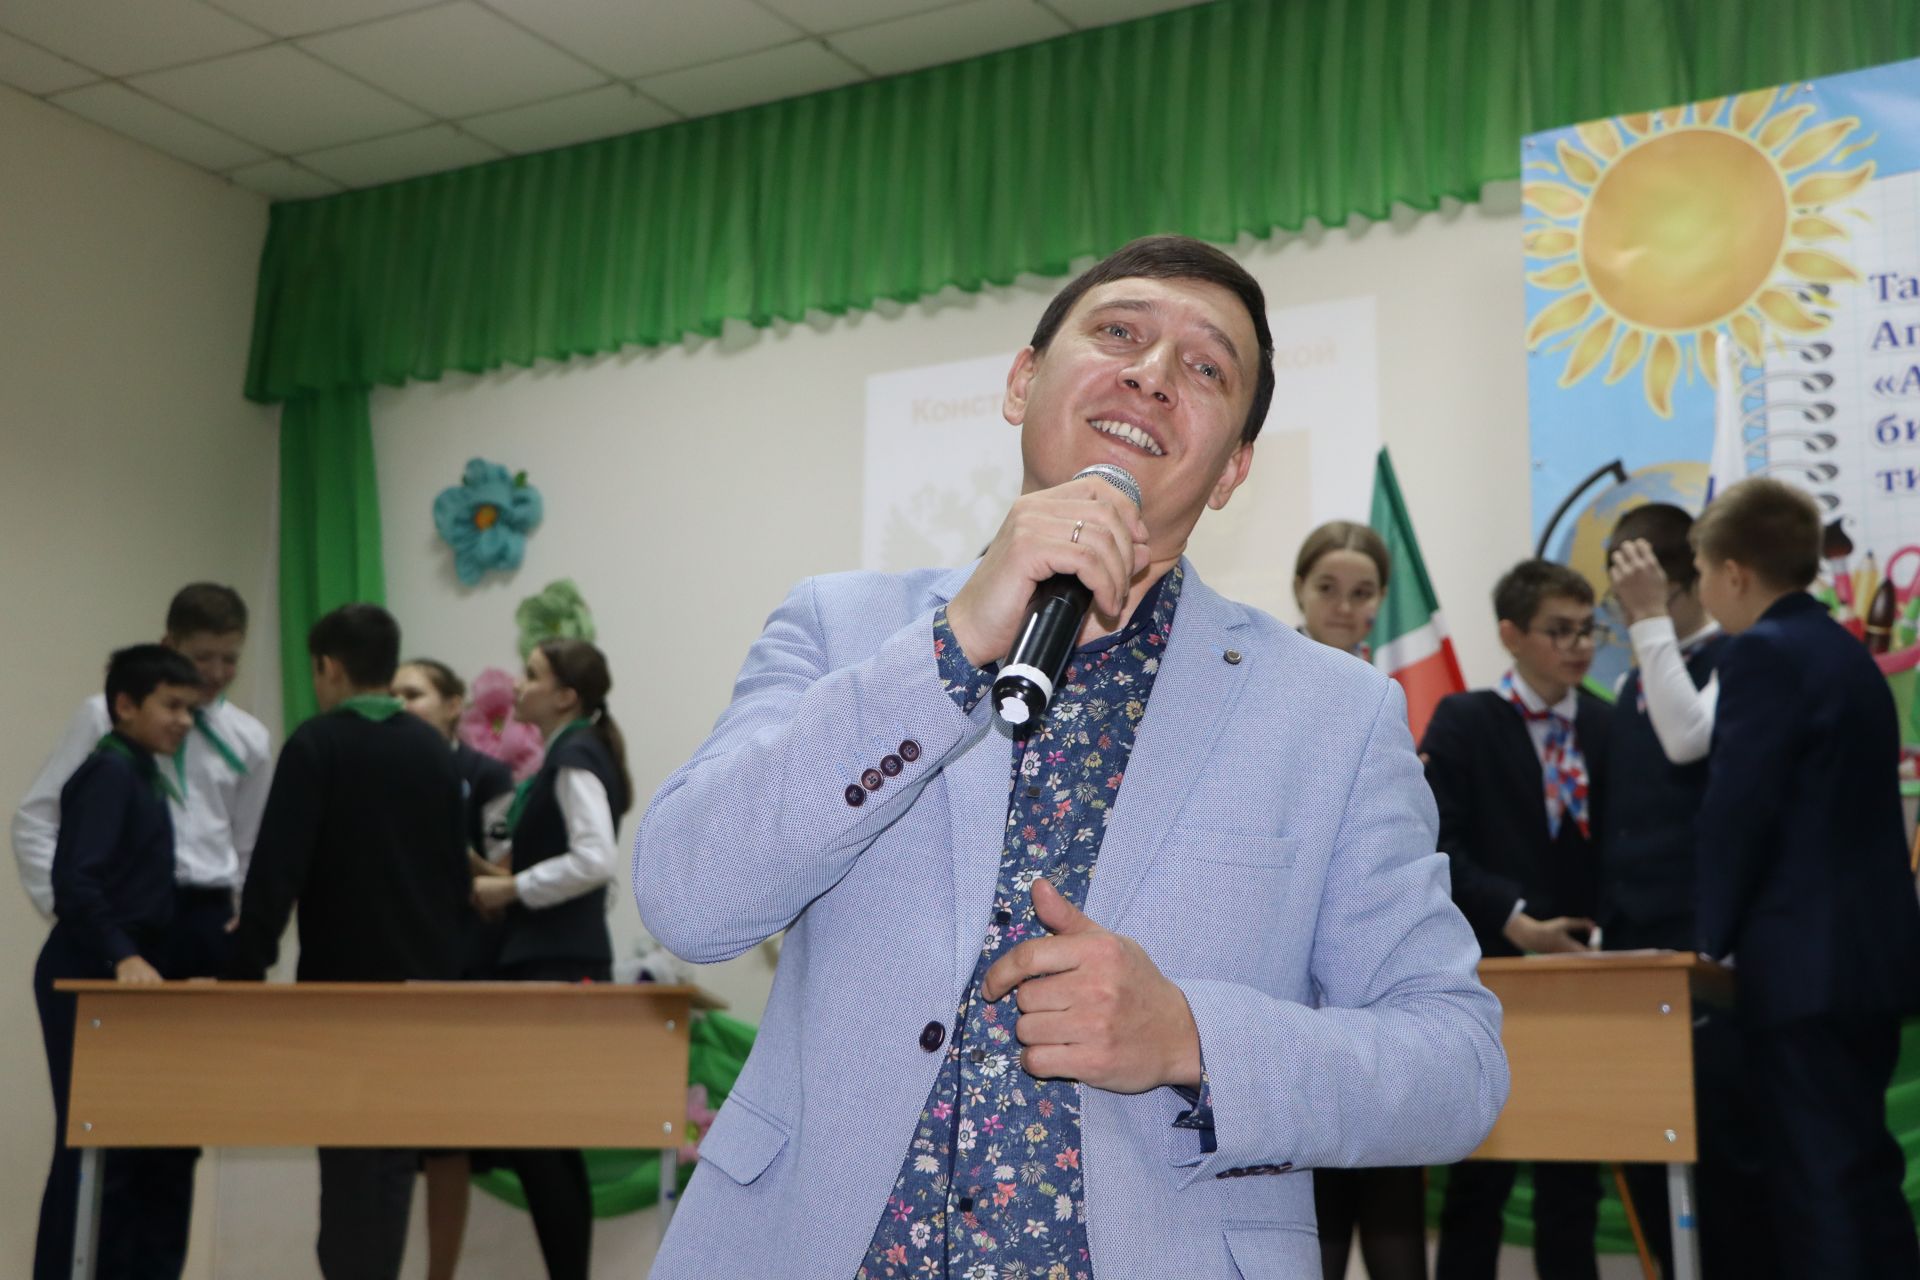 В Апастовской средней школе прошло мероприятие, посвященное Дню Конституции Российской Федерации